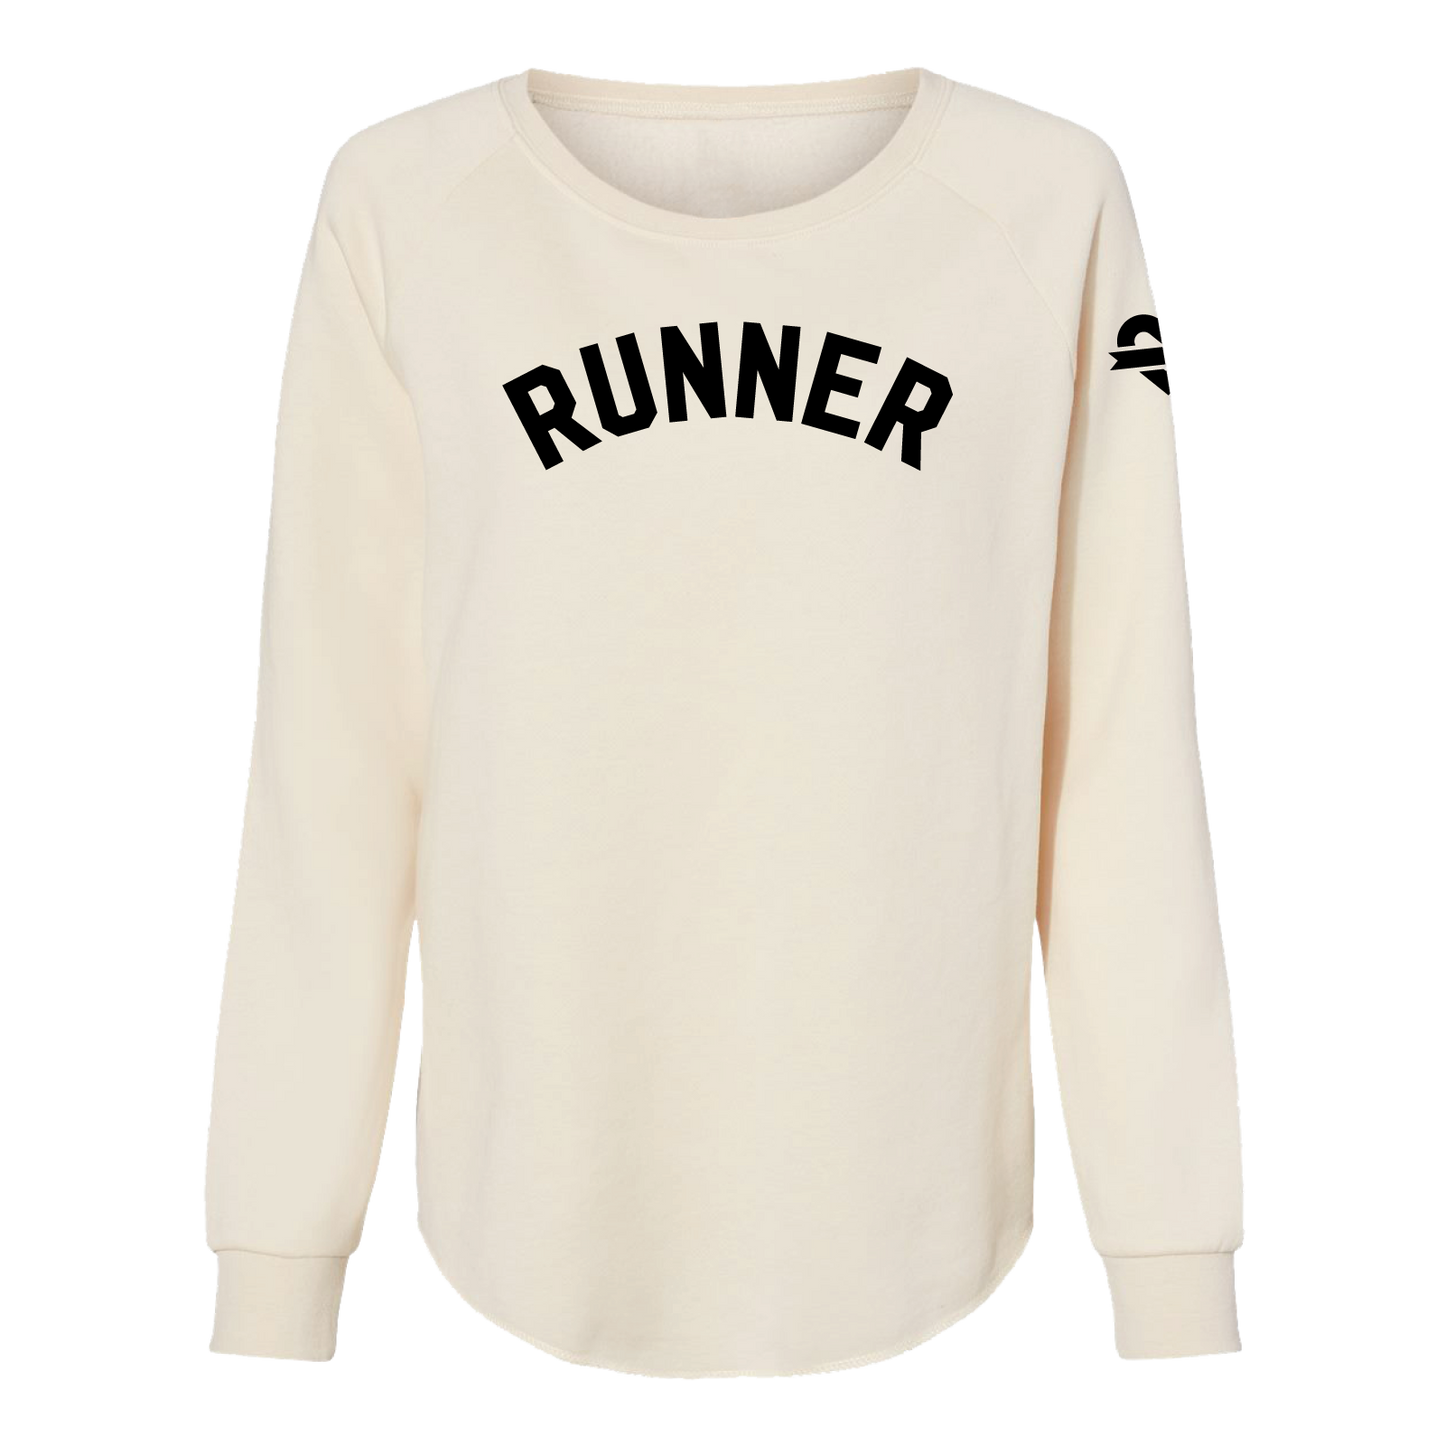 Runner - Sweatshirt - Women's